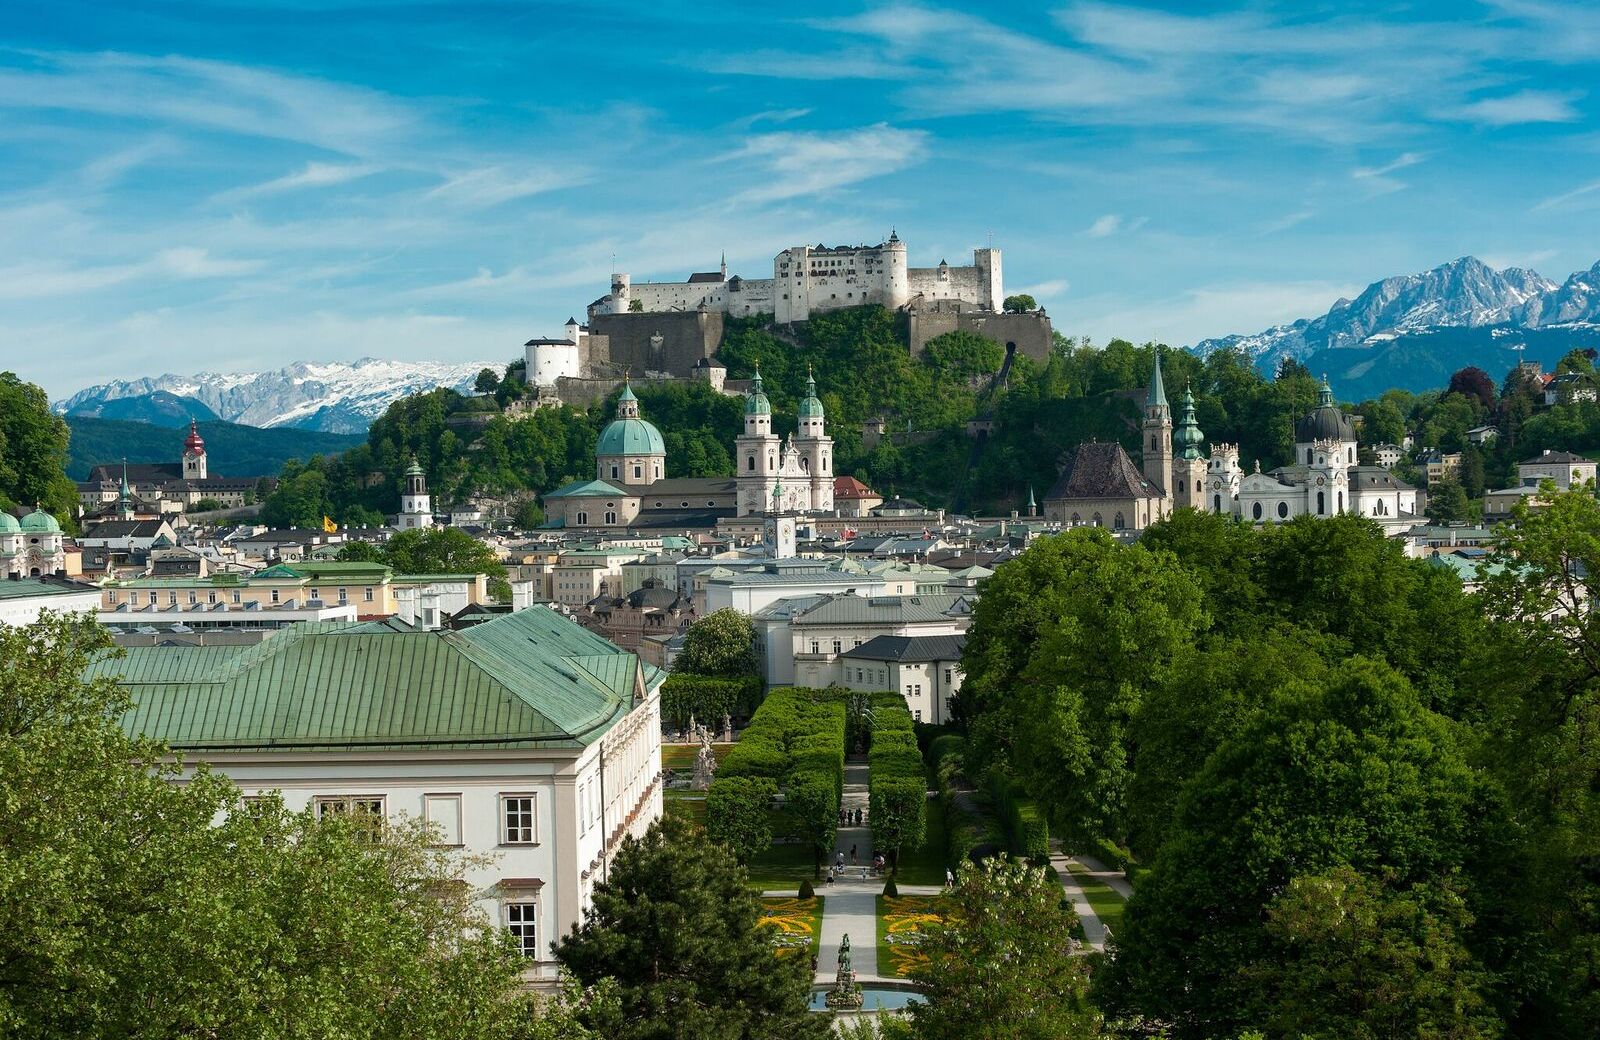 View of the castle above Salzburg, Austria.